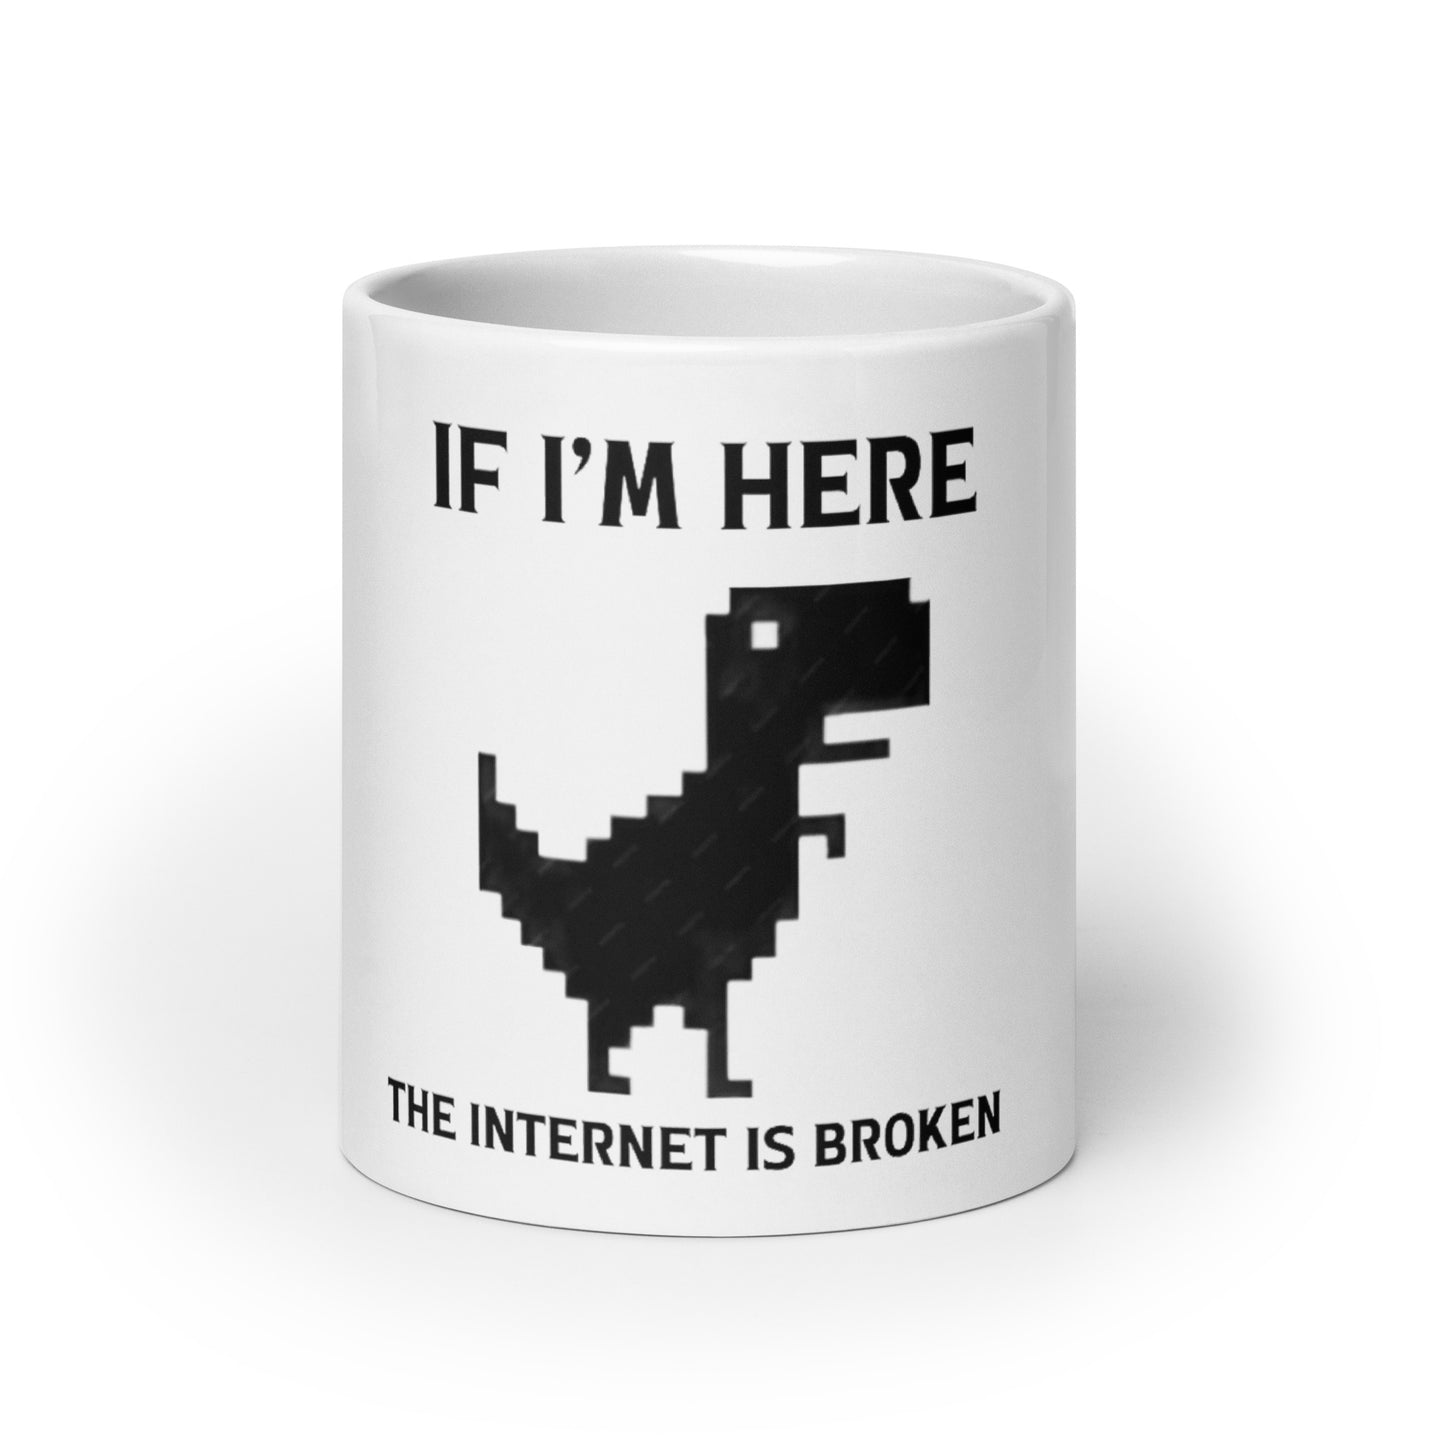 Broken Internet mug